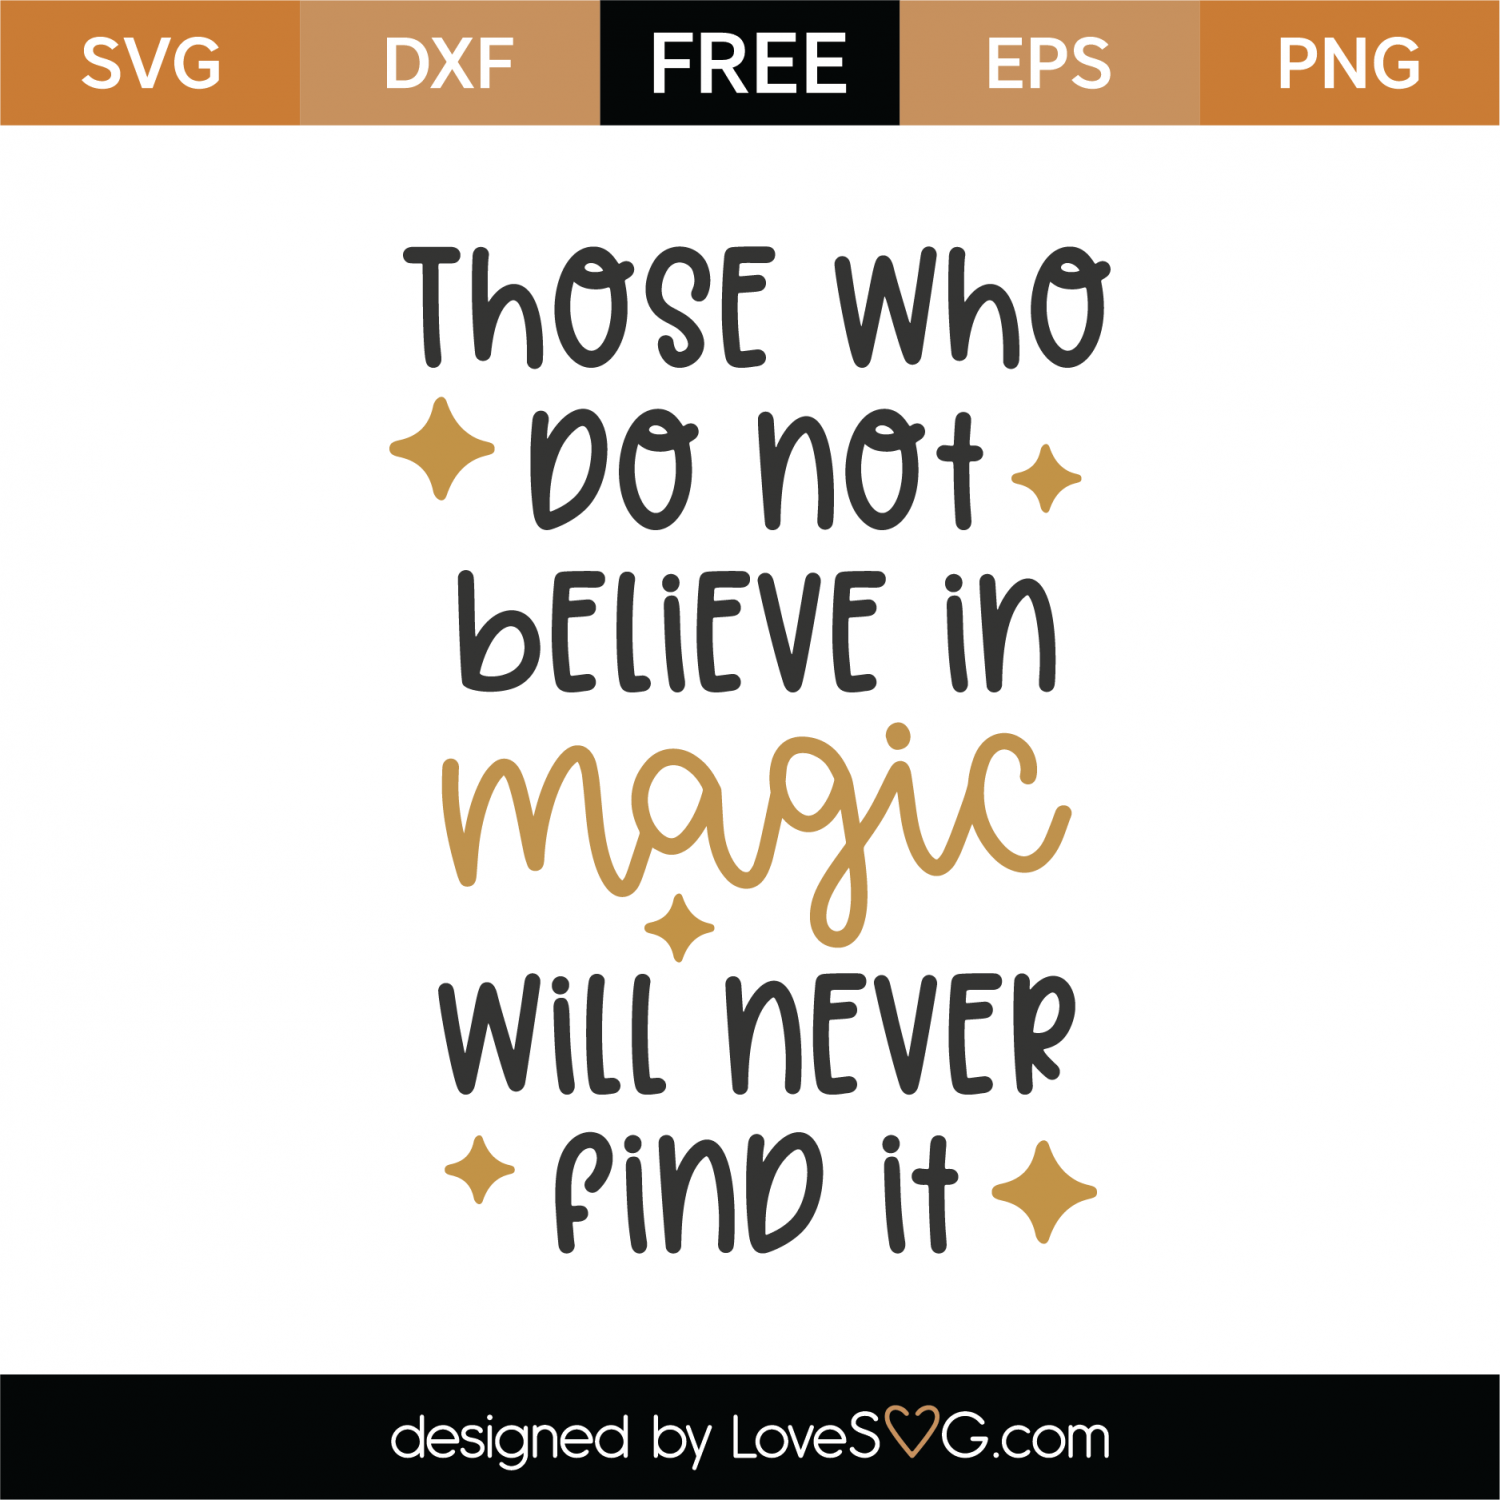 Free Believe In Magic SVG Cut File | Lovesvg.com